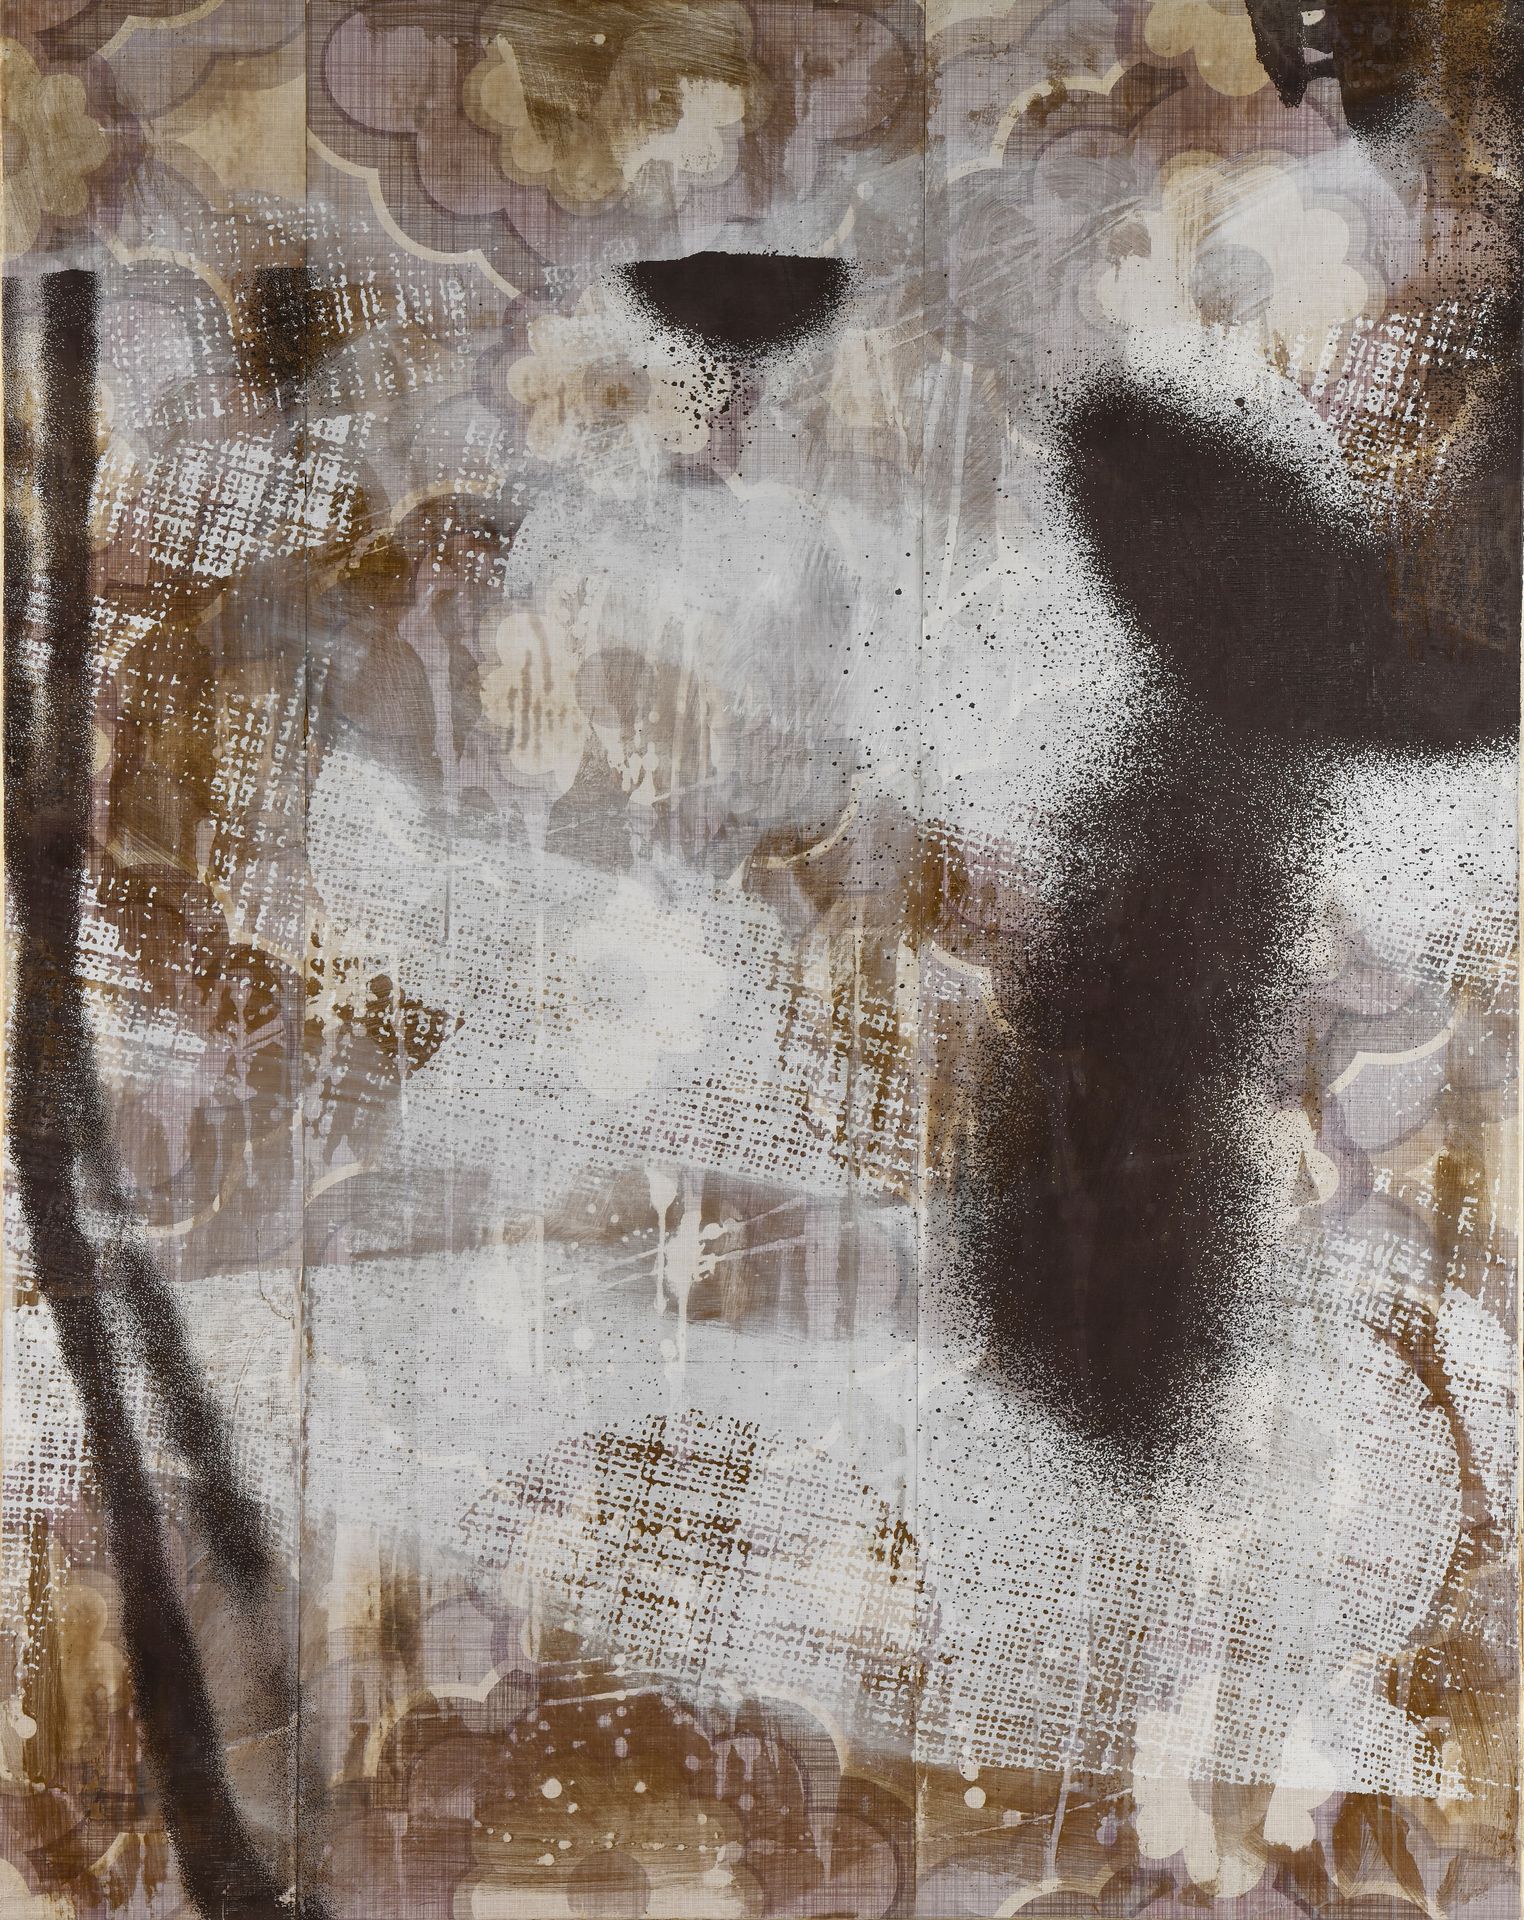 Null 雷纳德-雷格纳里（生于1976年）
三重麻烦X
混合媒体，丙烯酸，压花墙纸，背面有签名，标题和日期。
169 x 134,5 cm